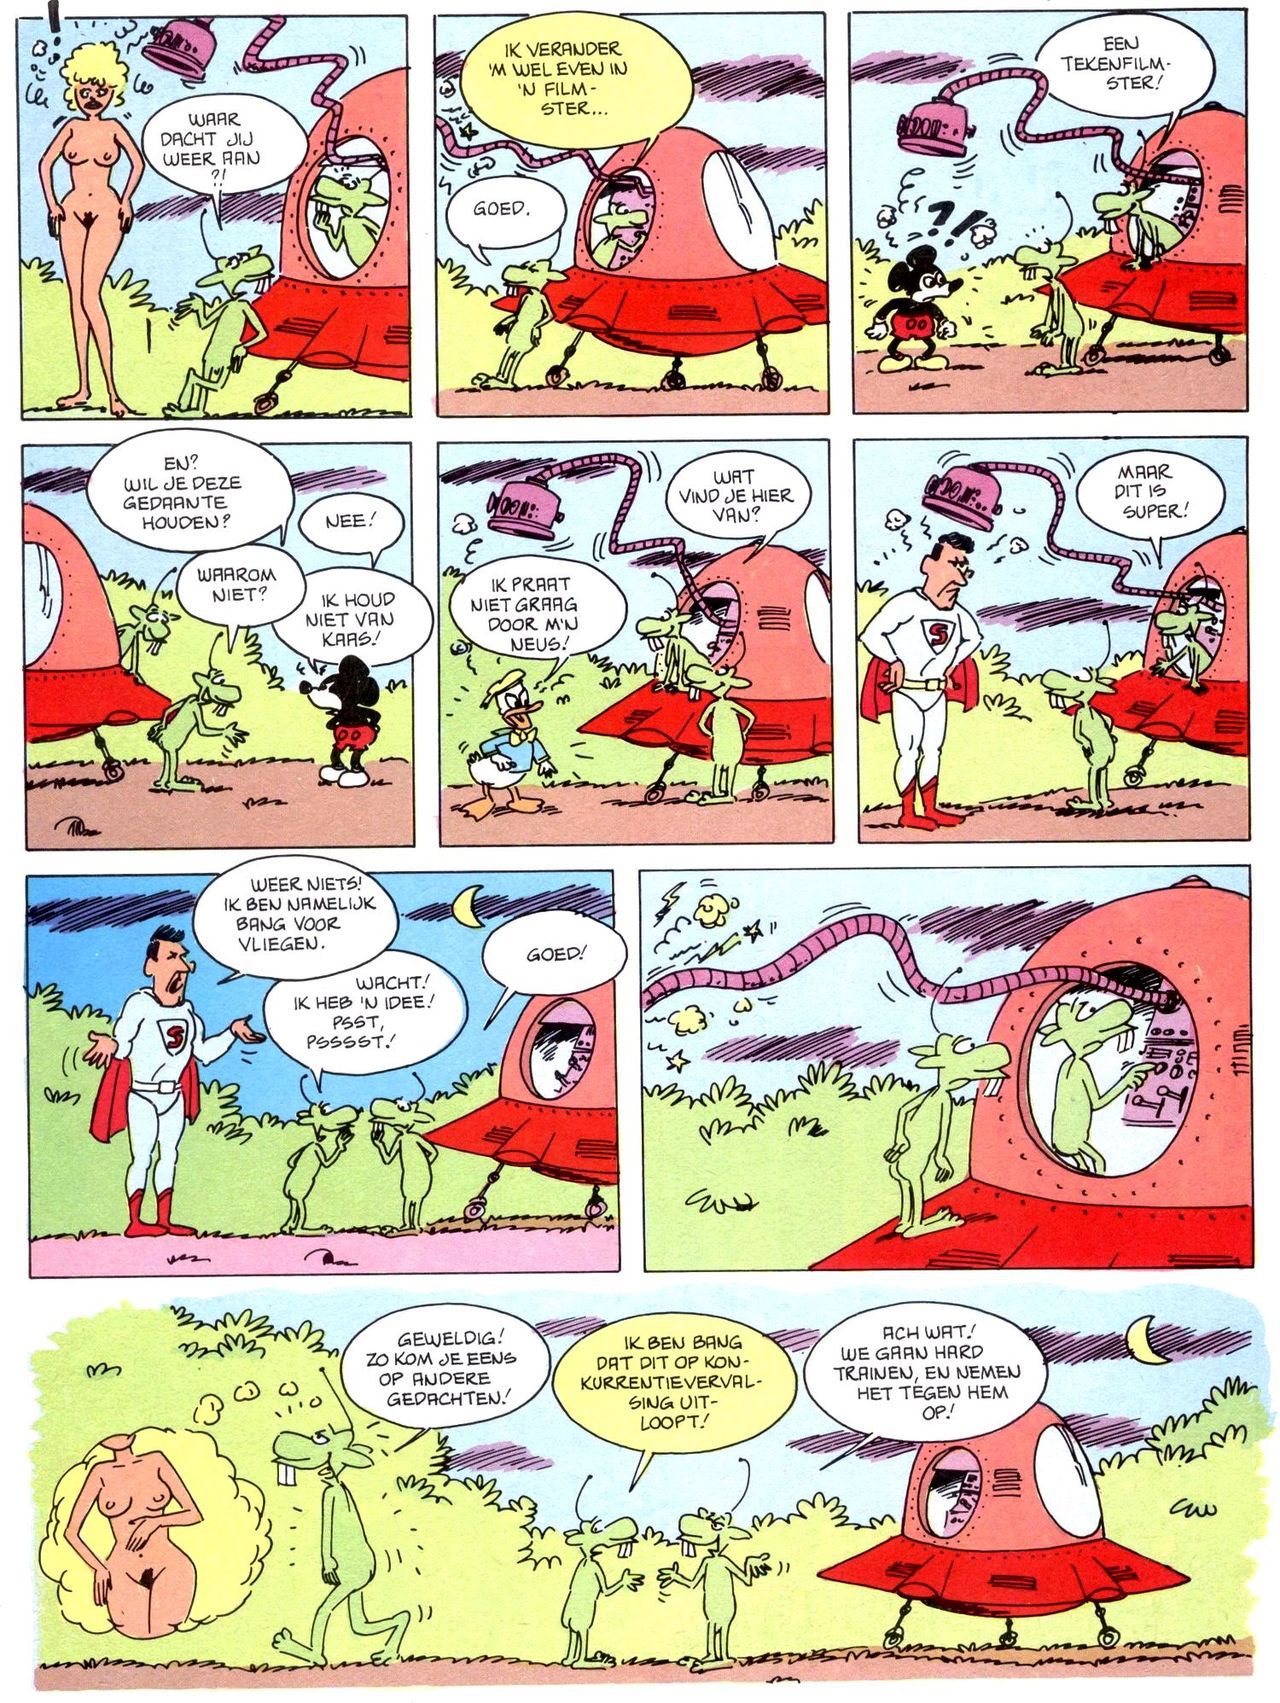 Het Is Groen En Het.. - 02 - Verboden Op Het Gras Te Lopen (Dutch) Een oude humoristische serie van Pat Mallet 42